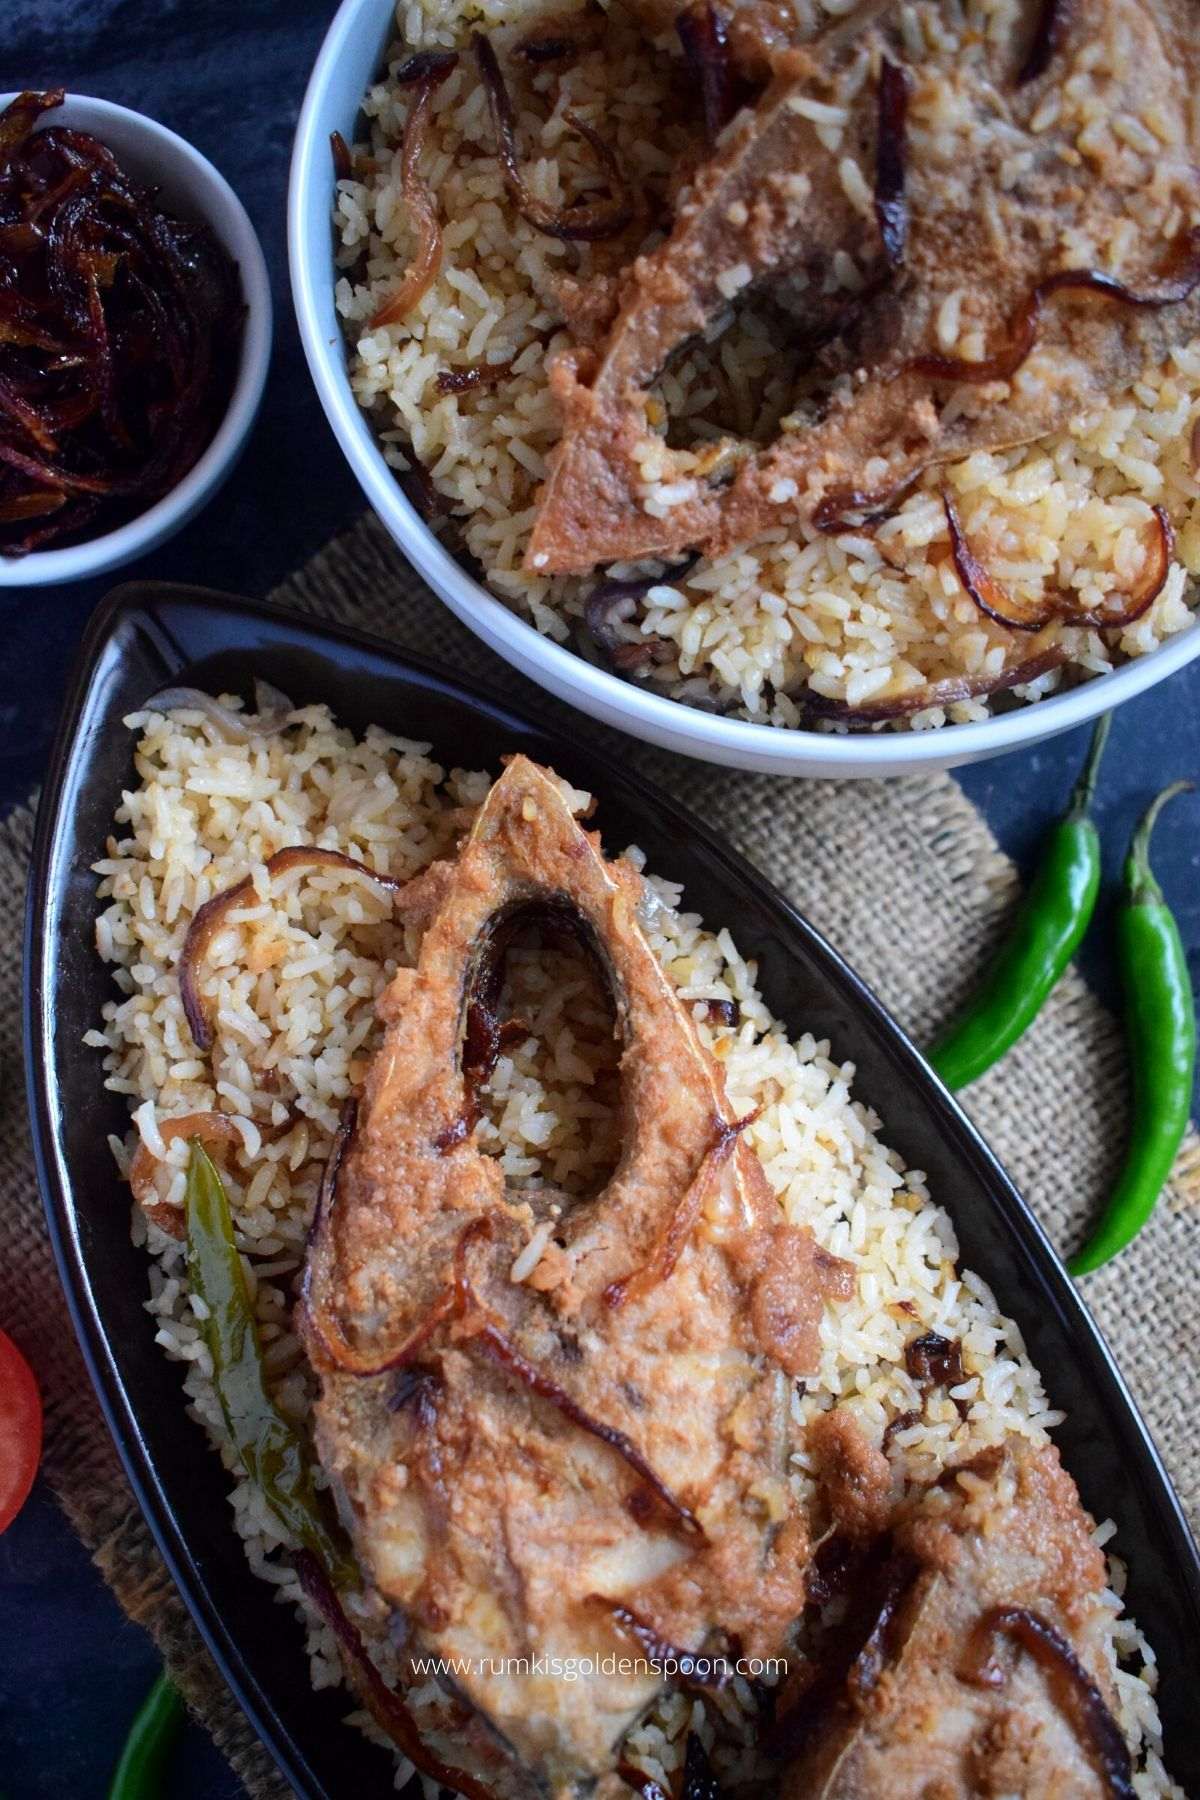 ilish pulao, ilish polao, ilish macher pulao, ilish polao recipe, ilish pulao recipe, ilish polao recipe bengali, ilish macher pulao recipe, hilsa pulao recipe, hilsa pulao, how to make ilish polao, ilish polao recipe in bengali, how to make ilish pulao, bengali hilsa pulao, hilsa pilaf, elish mas, recipe for hilsa fish, hilsa recipe, hilsa fish curry, hilsa fish recipe, recipe of hilsa fish, recipe for hilsa fish, hilsa fish Bengali recipe, how to cook hilsa fish, how to cook Ilish fish, ilish mach recipe, ilish macher recipe, ilish macher jhol recipe, bengali recipe, bengali recipes, bengali food, bengali food recipes, recipes of bengali food, traditional bengali food, Bengali recipes fish, Bengali recipe of fish, Bengali recipe for fish, Rumki's Golden Spoon